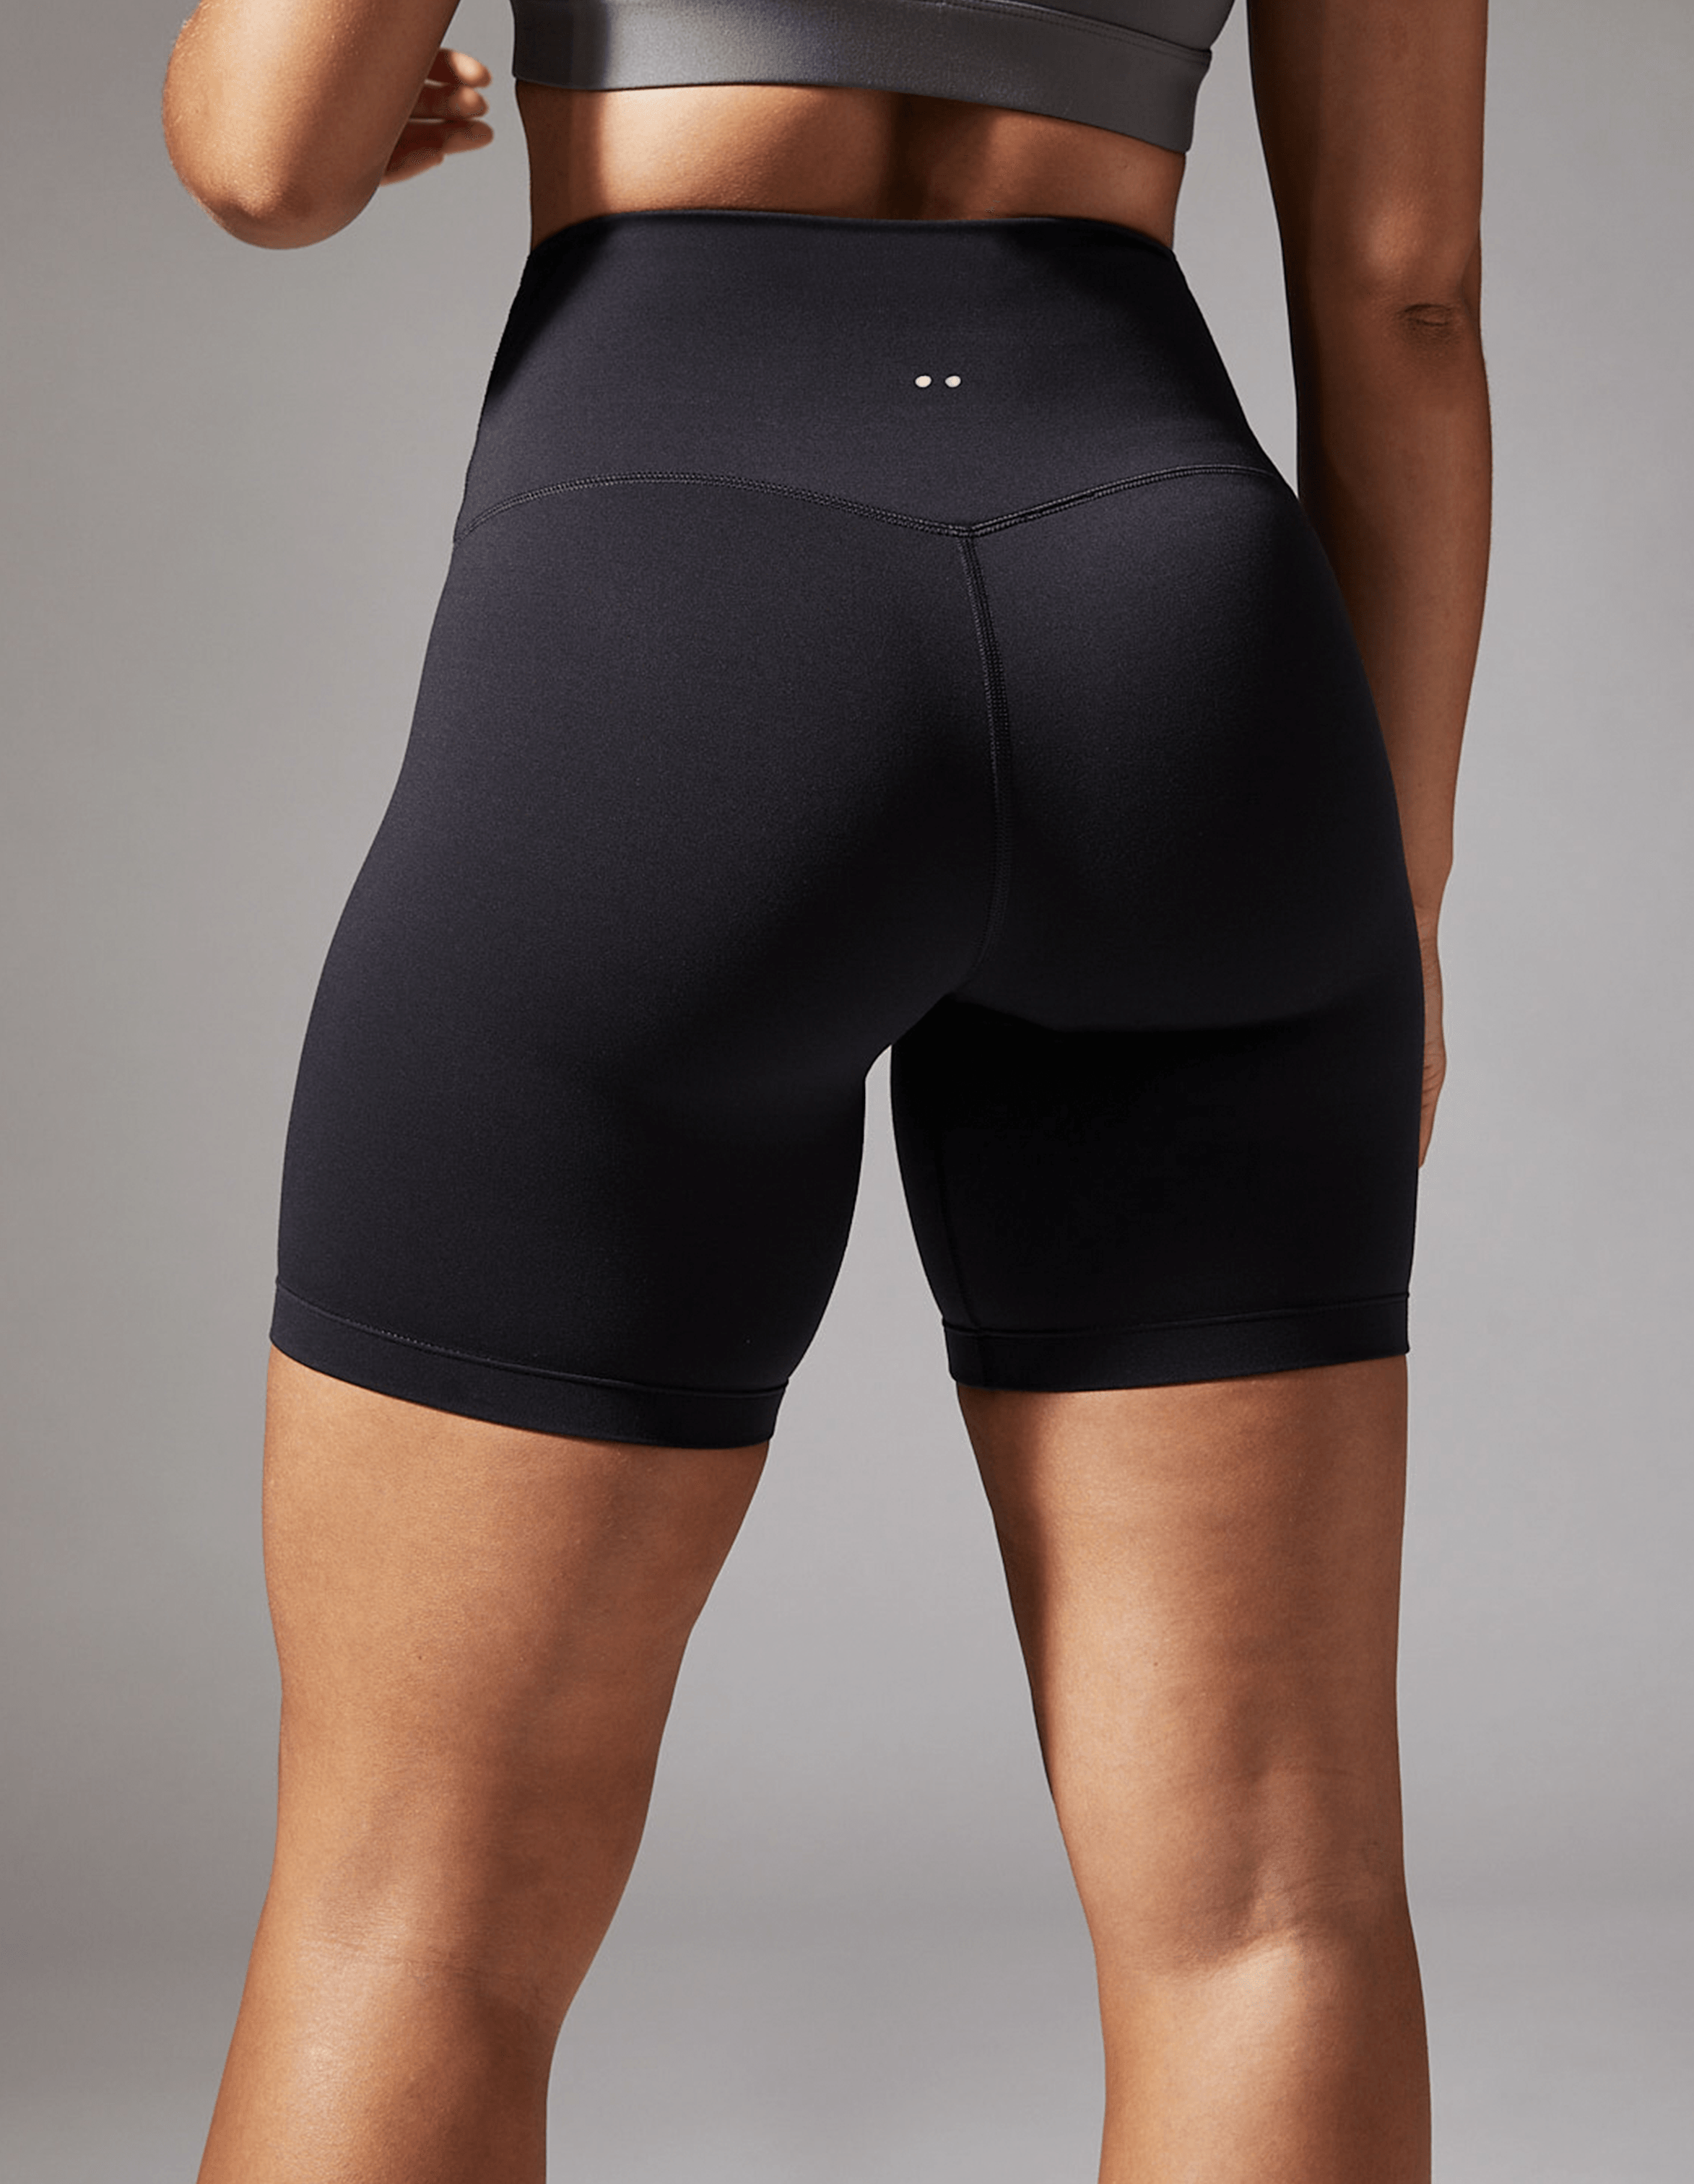 proterra shorts - äktiivwear.co